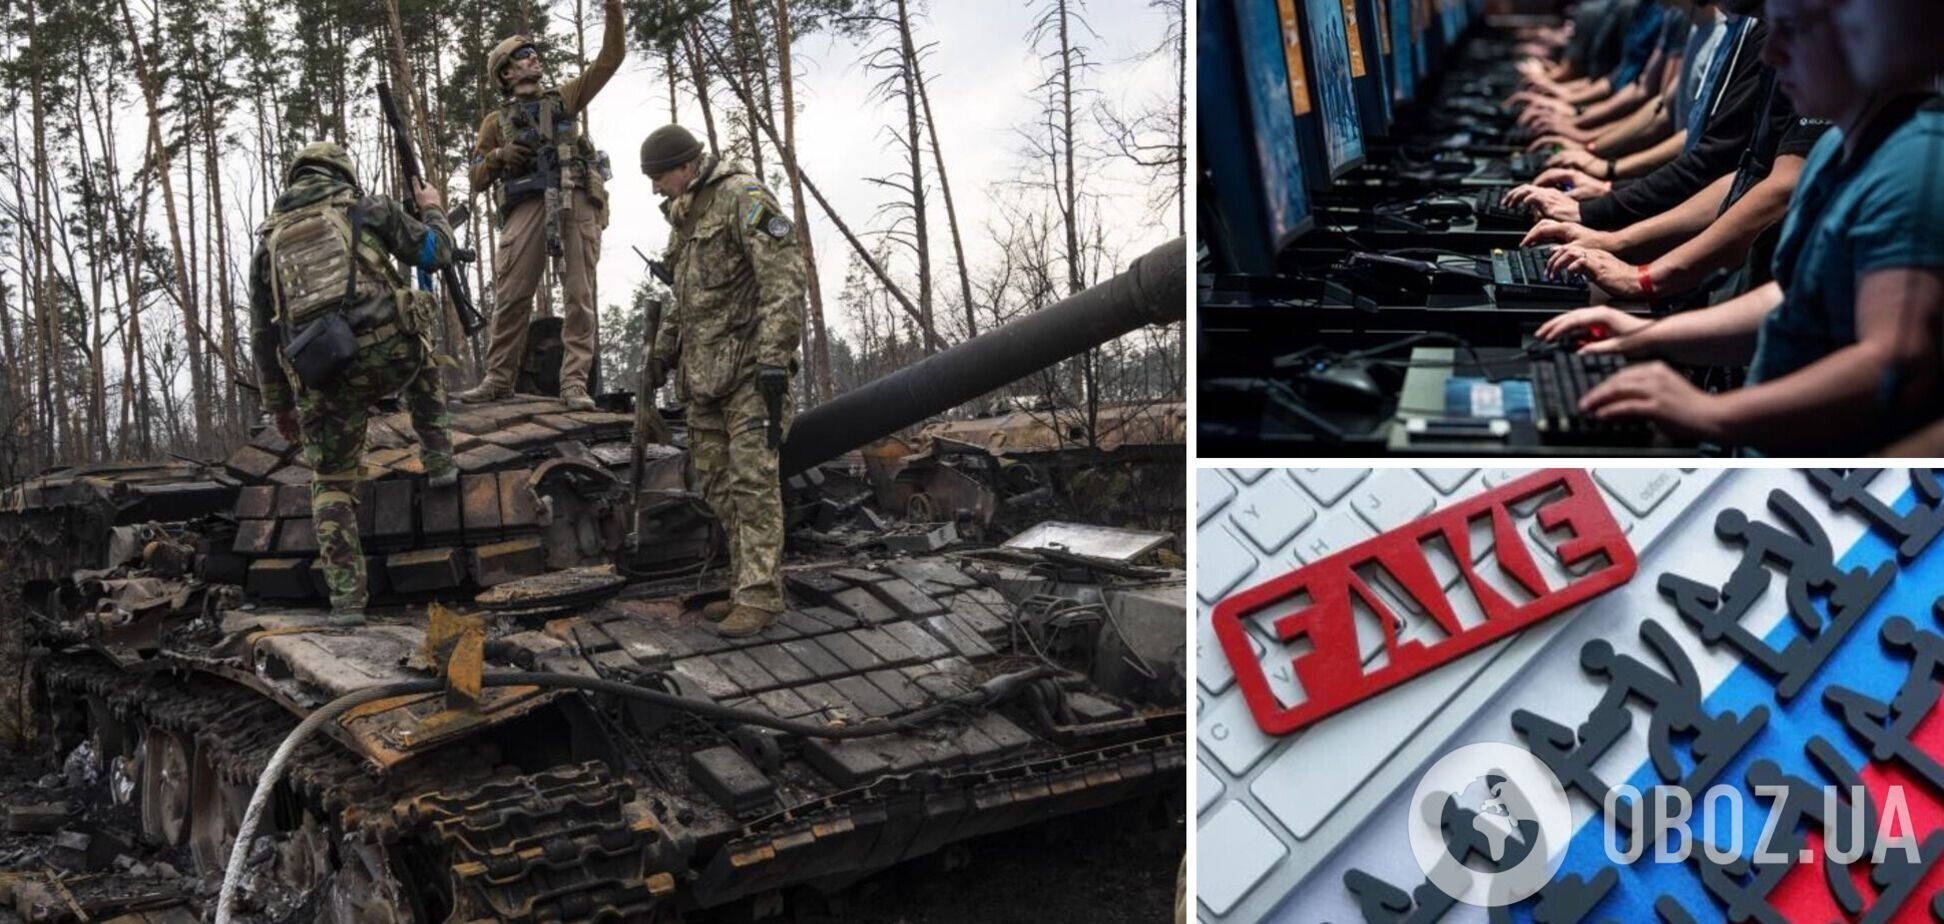 Россия запустила новую 'фабрику троллей' для распространения дезинформации о войне в Украине